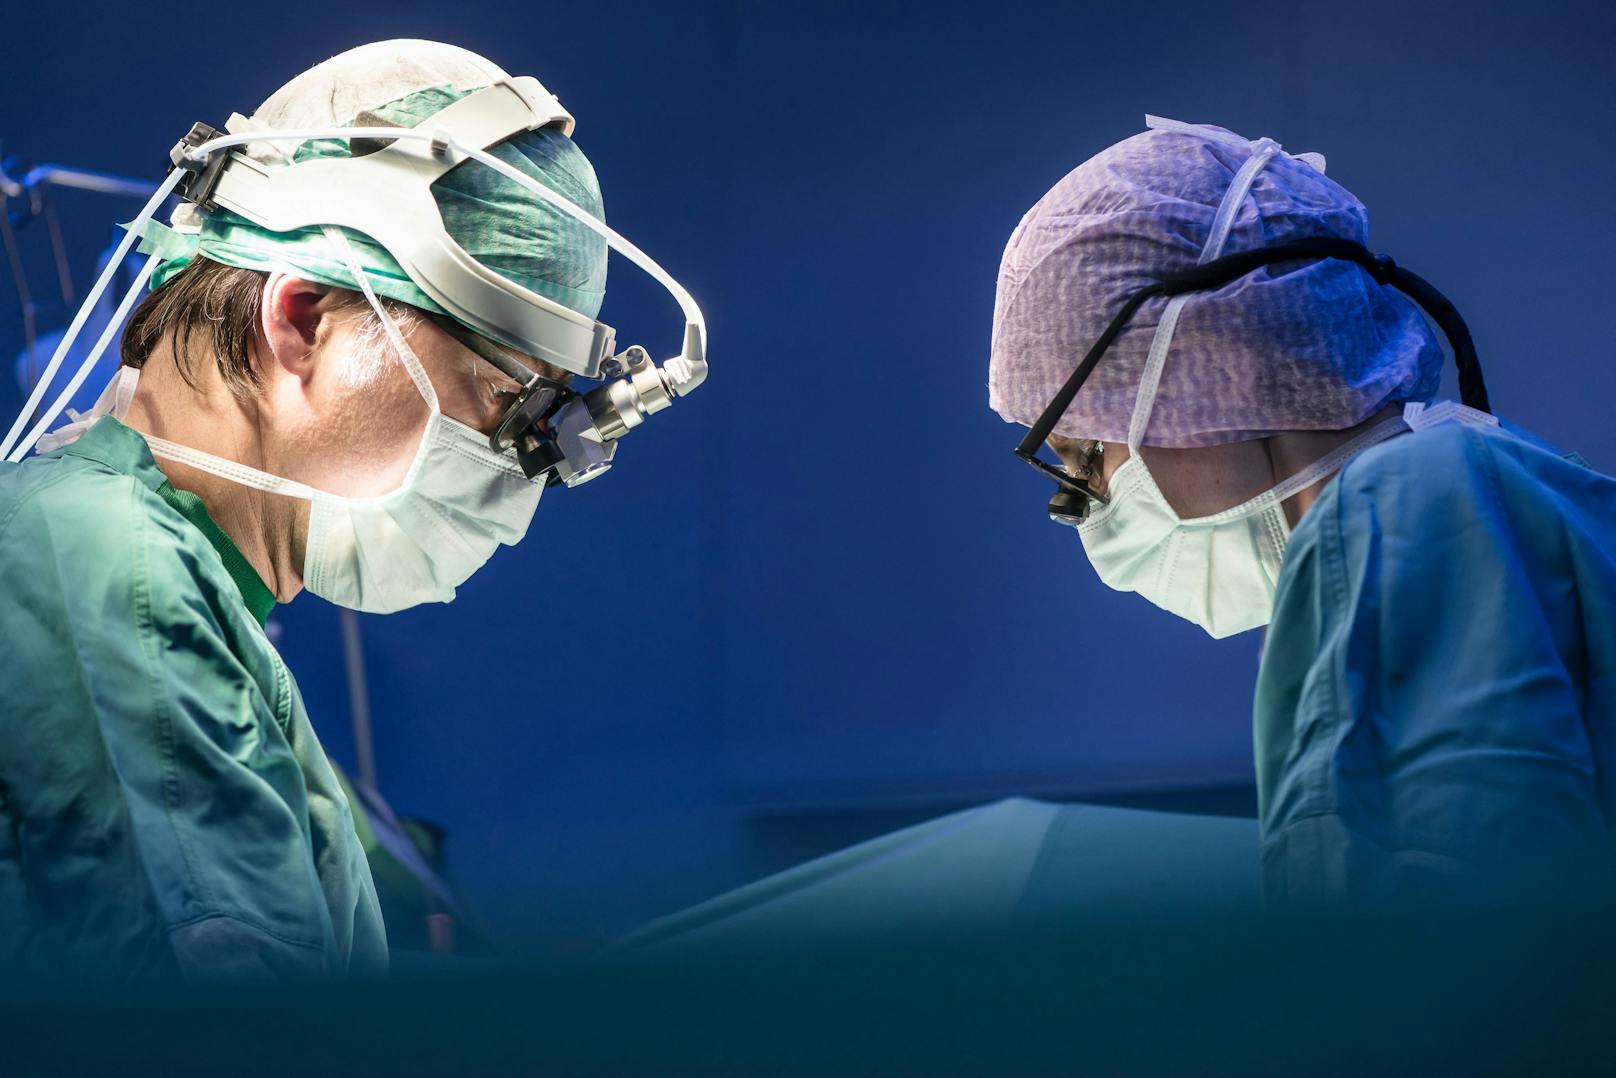 Zwei Chirurgen während einer Operation. Symbolbild.